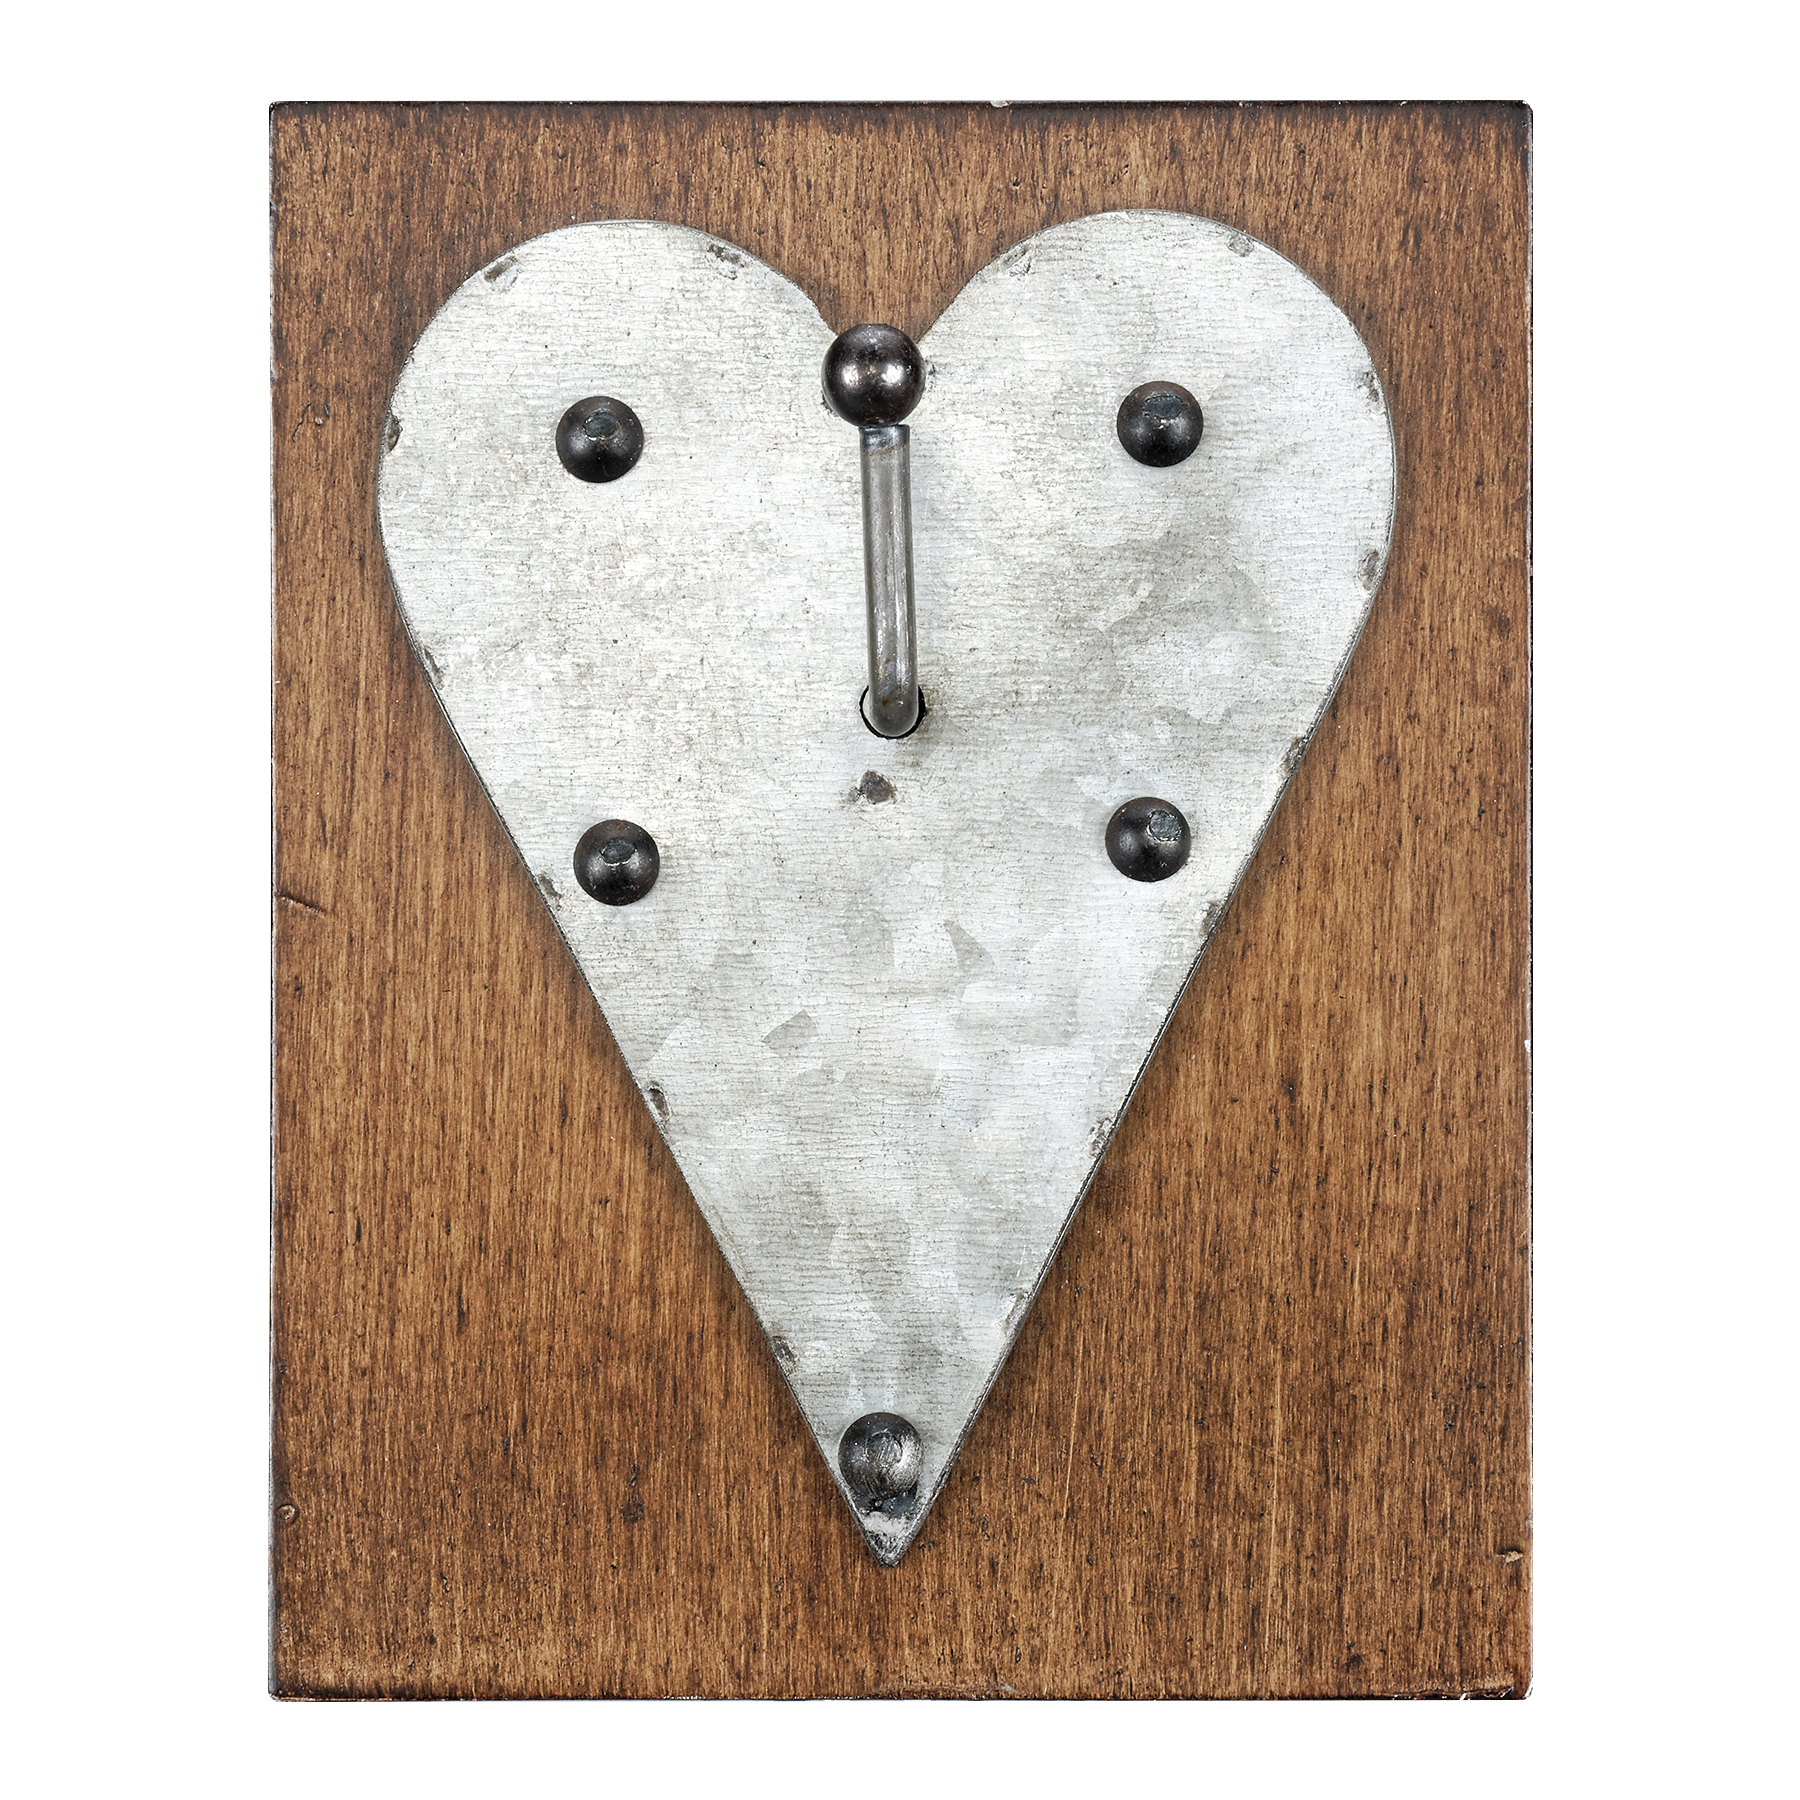 Farmington Heart Wall Hook By Studio Décor